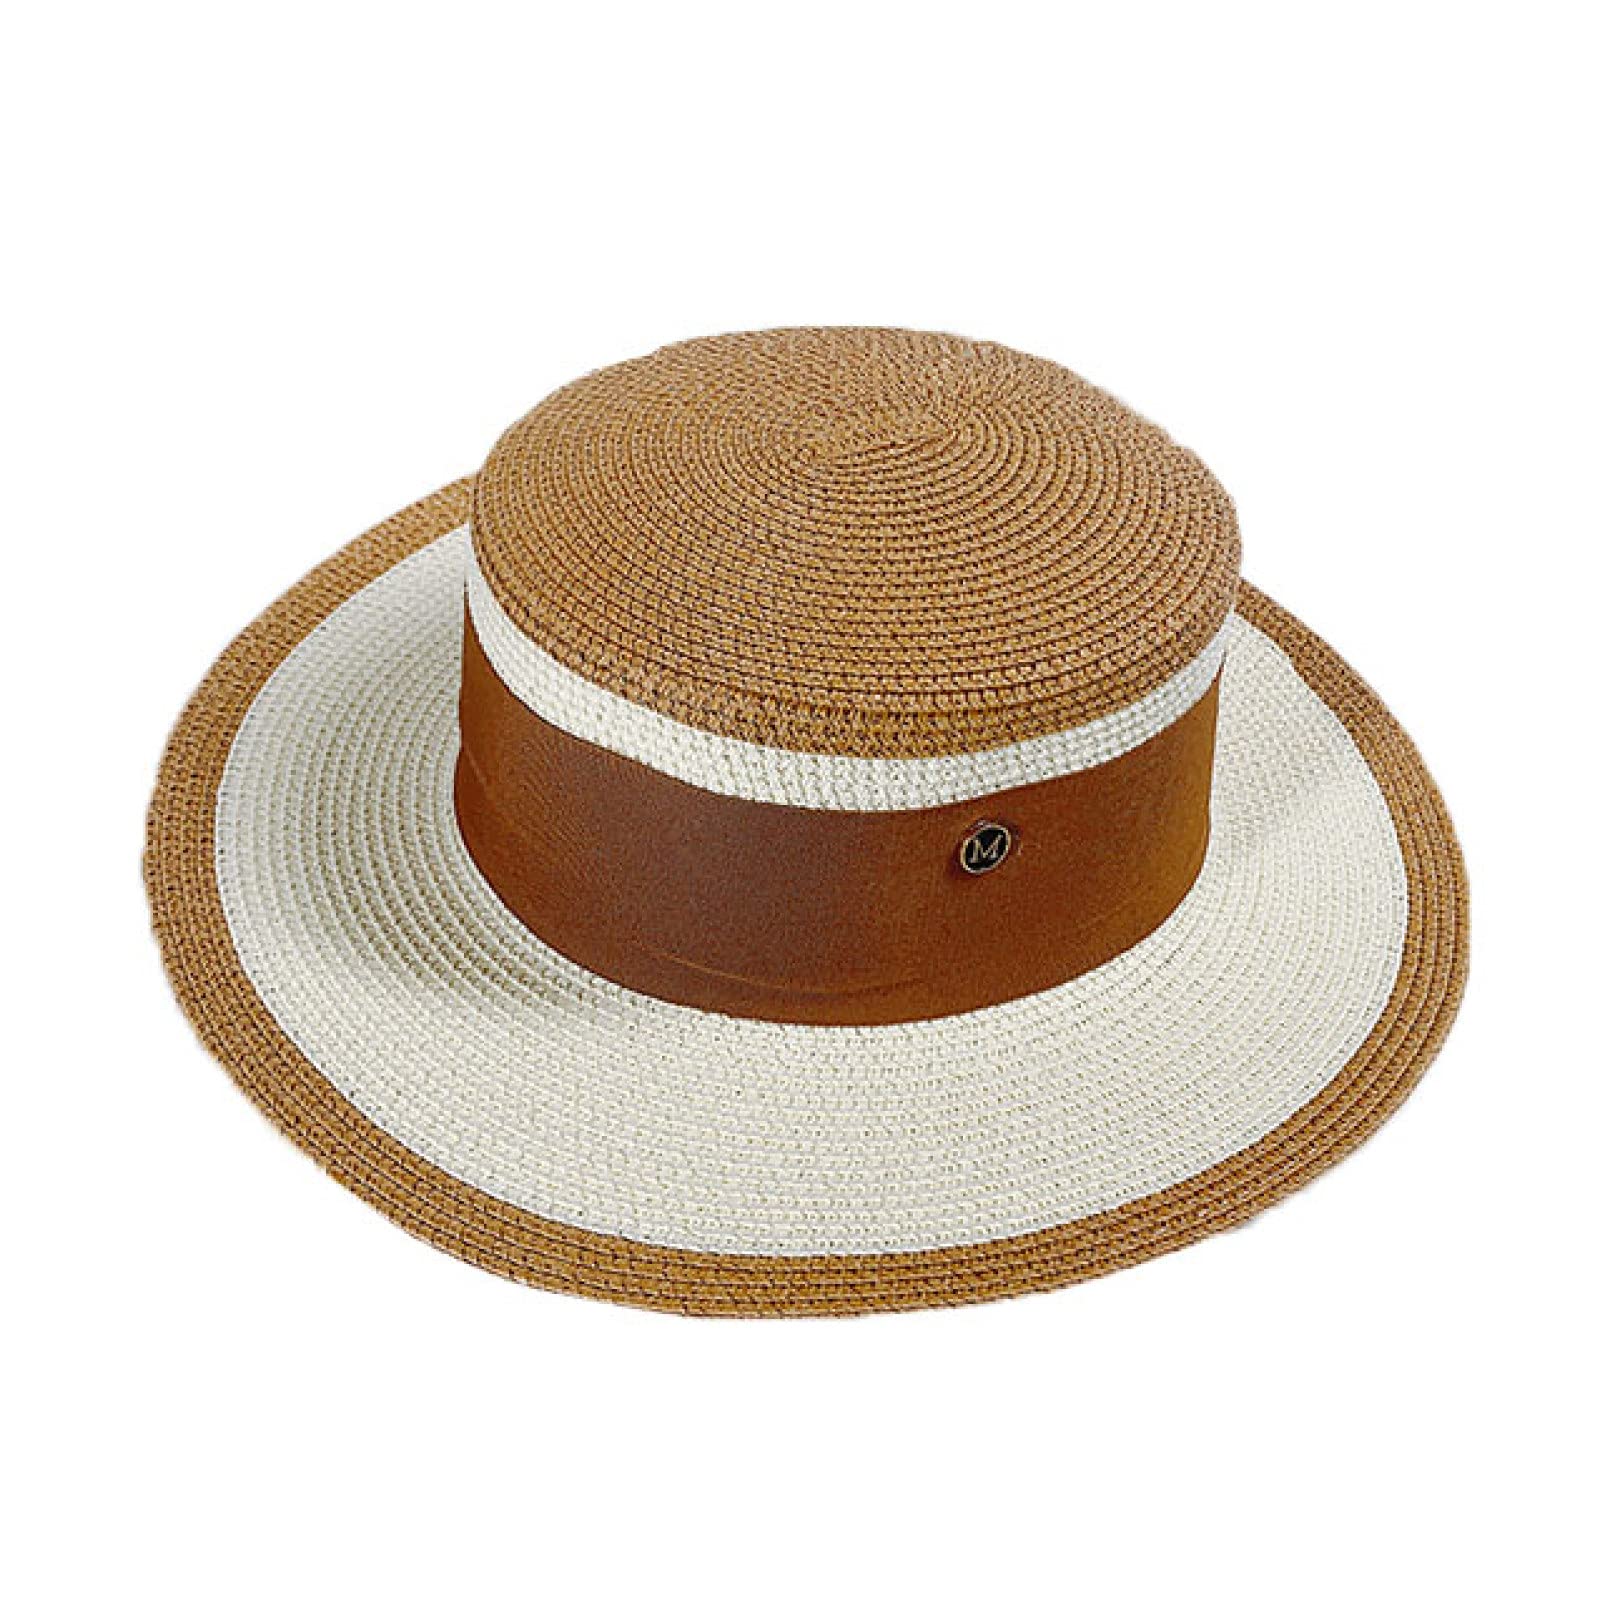 送料無料Beach Hat Caps Wheat Straw Hat Boater Fedora Top Flat Hat Women Summer Sun Hat Flat Brim Cap Holiday Hats Khaki